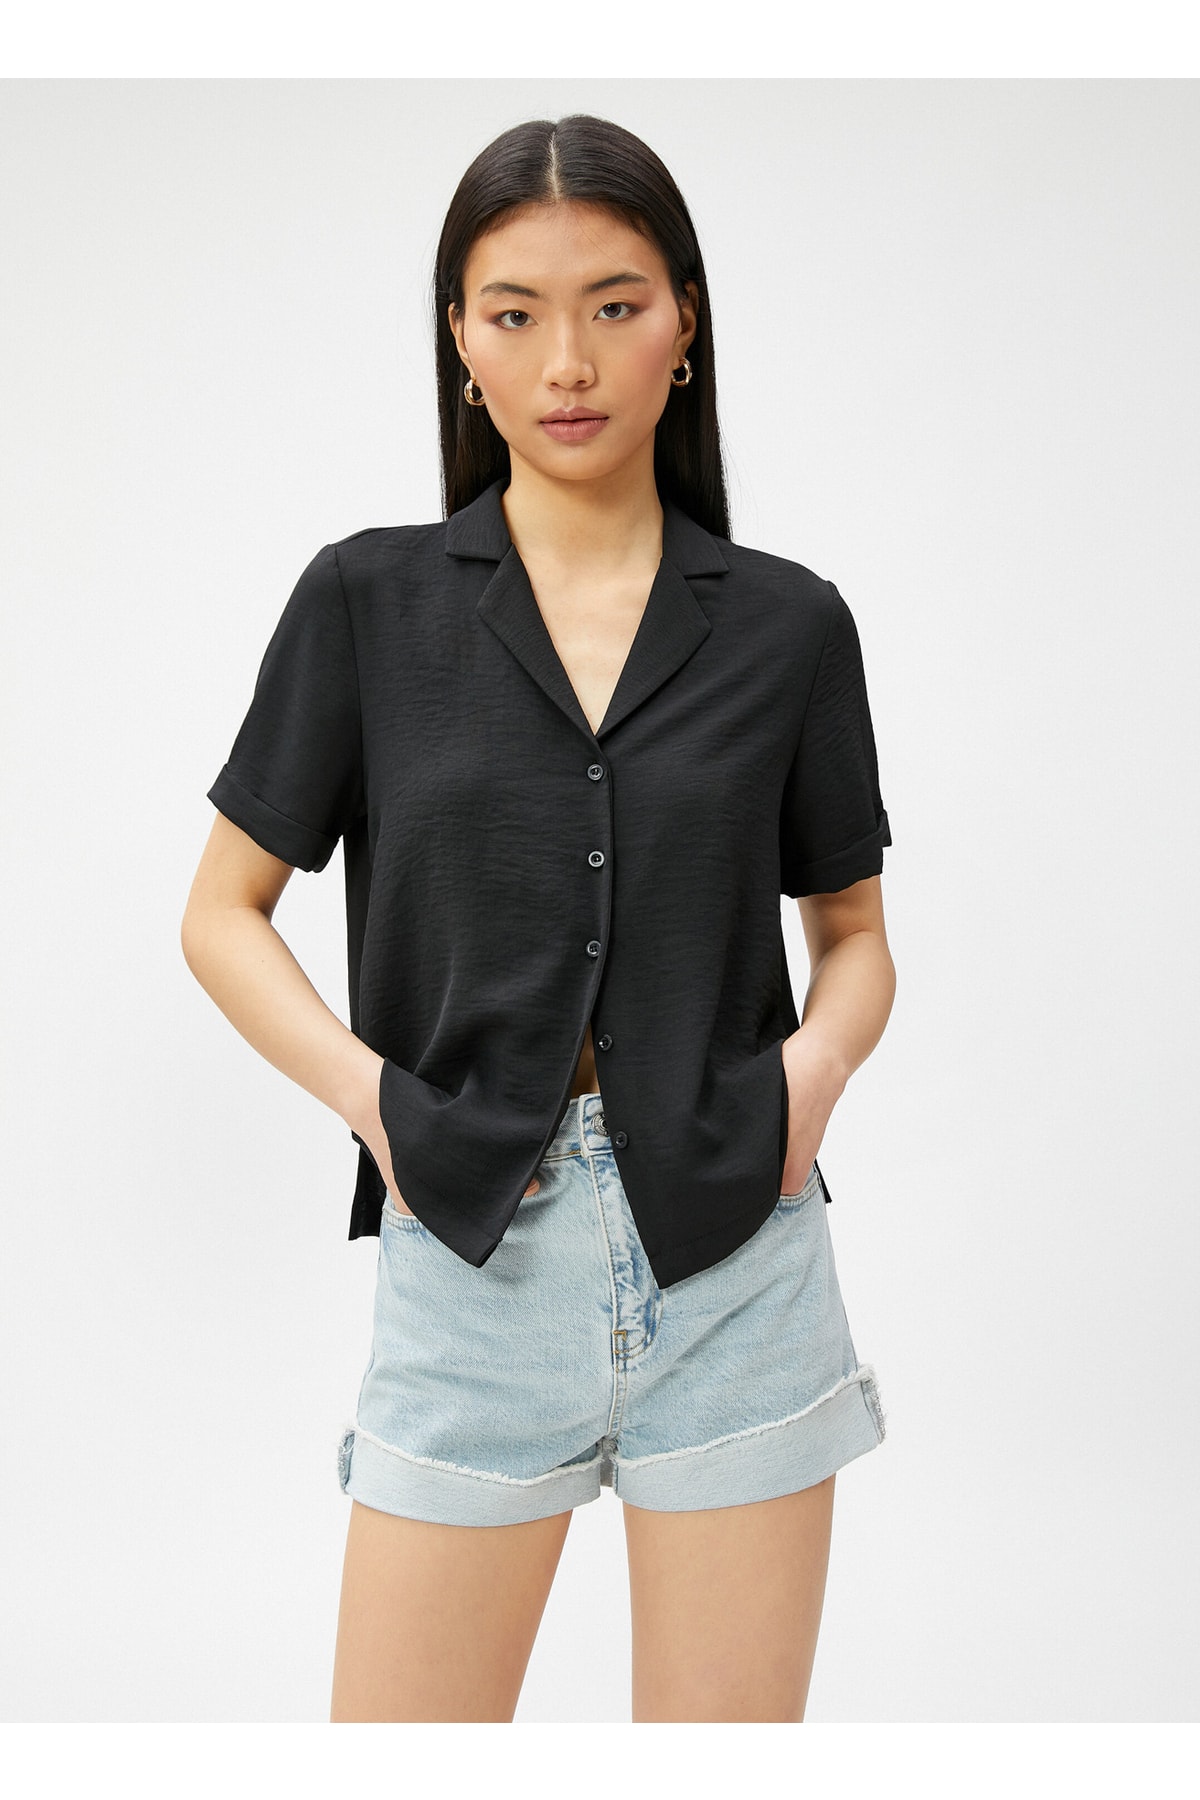 Koton Women's Shirt Collar Striped Black Shirt 3sak60021pw